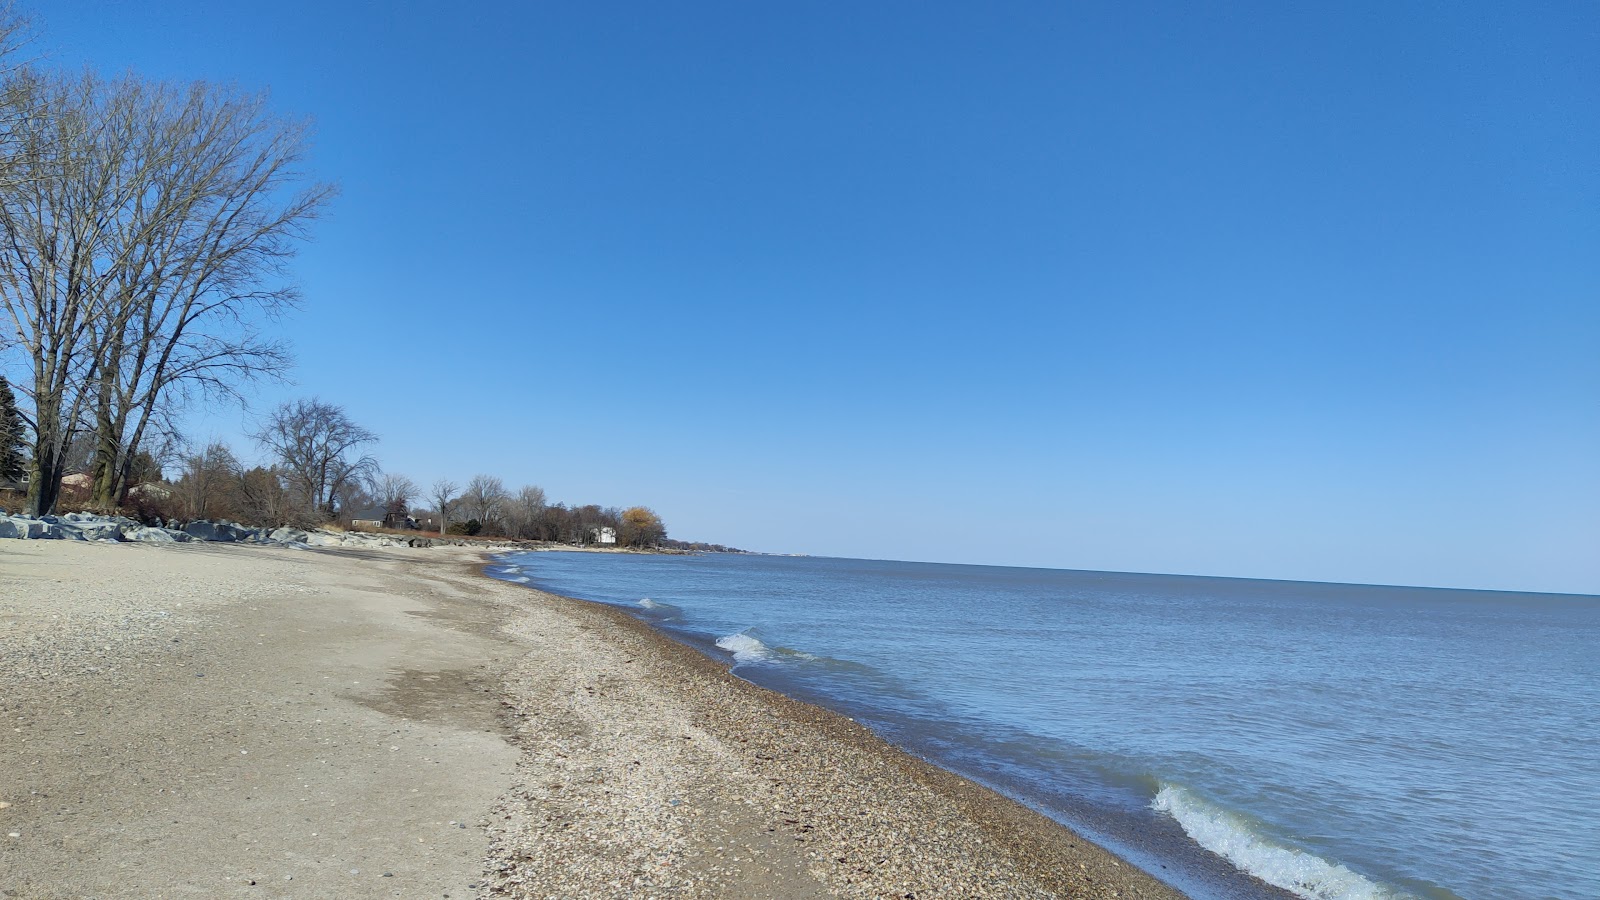 Zdjęcie Carol Beach z powierzchnią piasek z kamykami